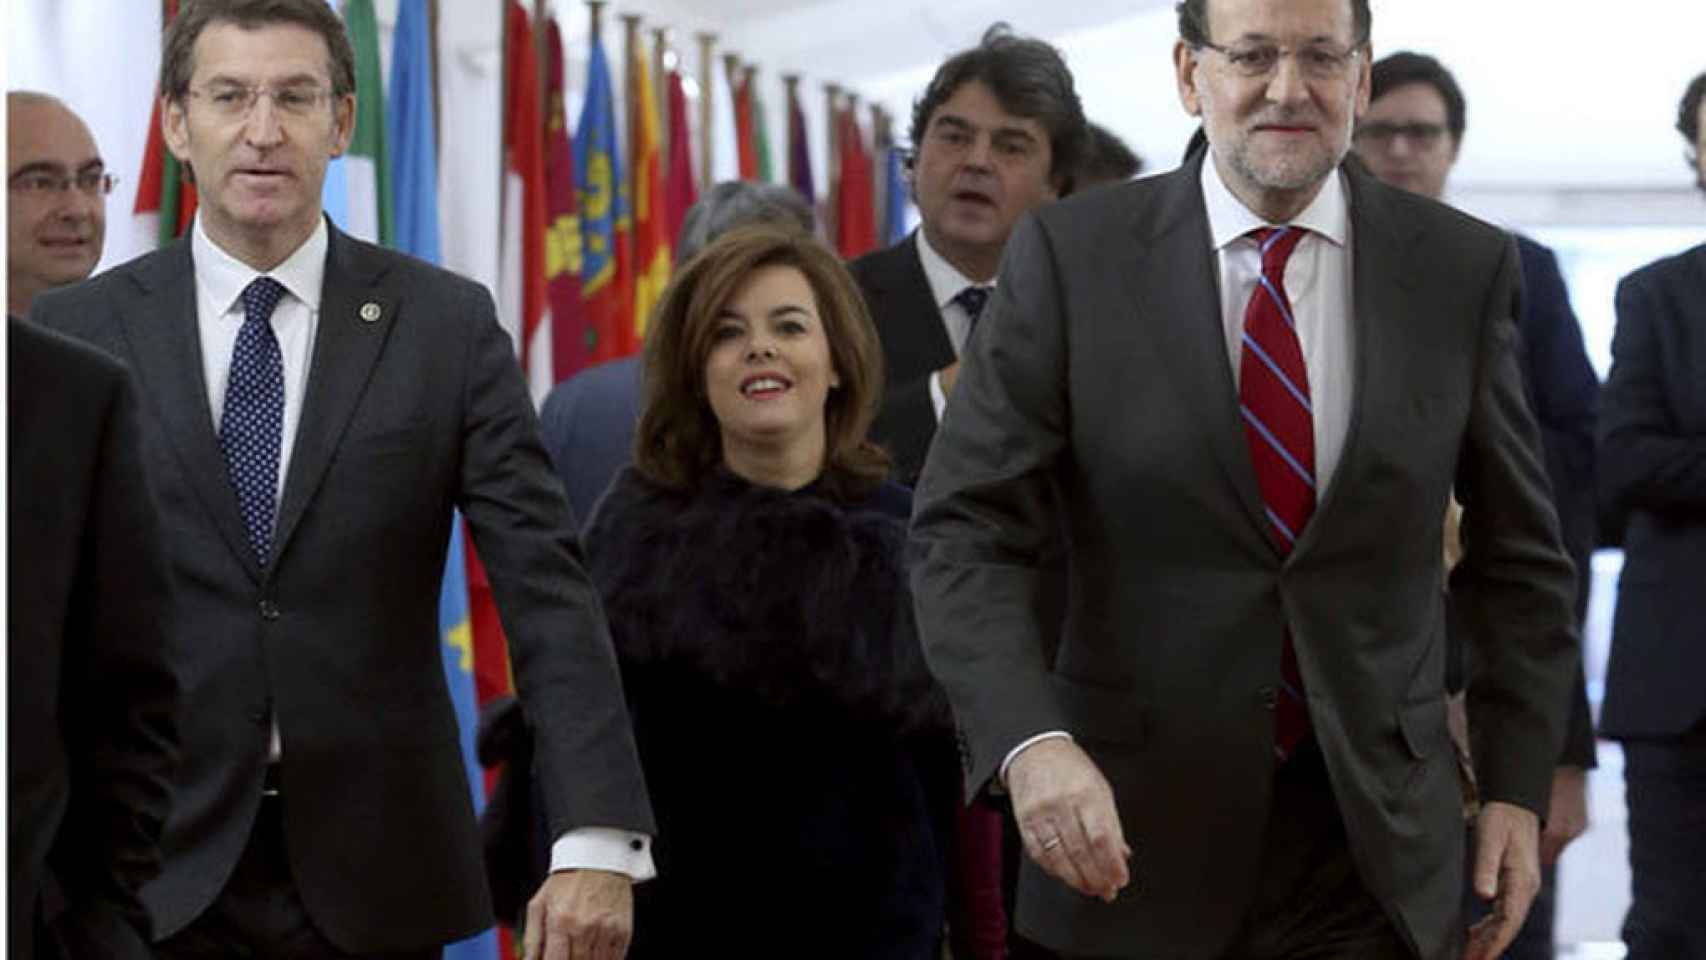 El presidente de la Xunta de Galicia junto con Mariano Rajoy y Soraya Sáenz de Santamaría.